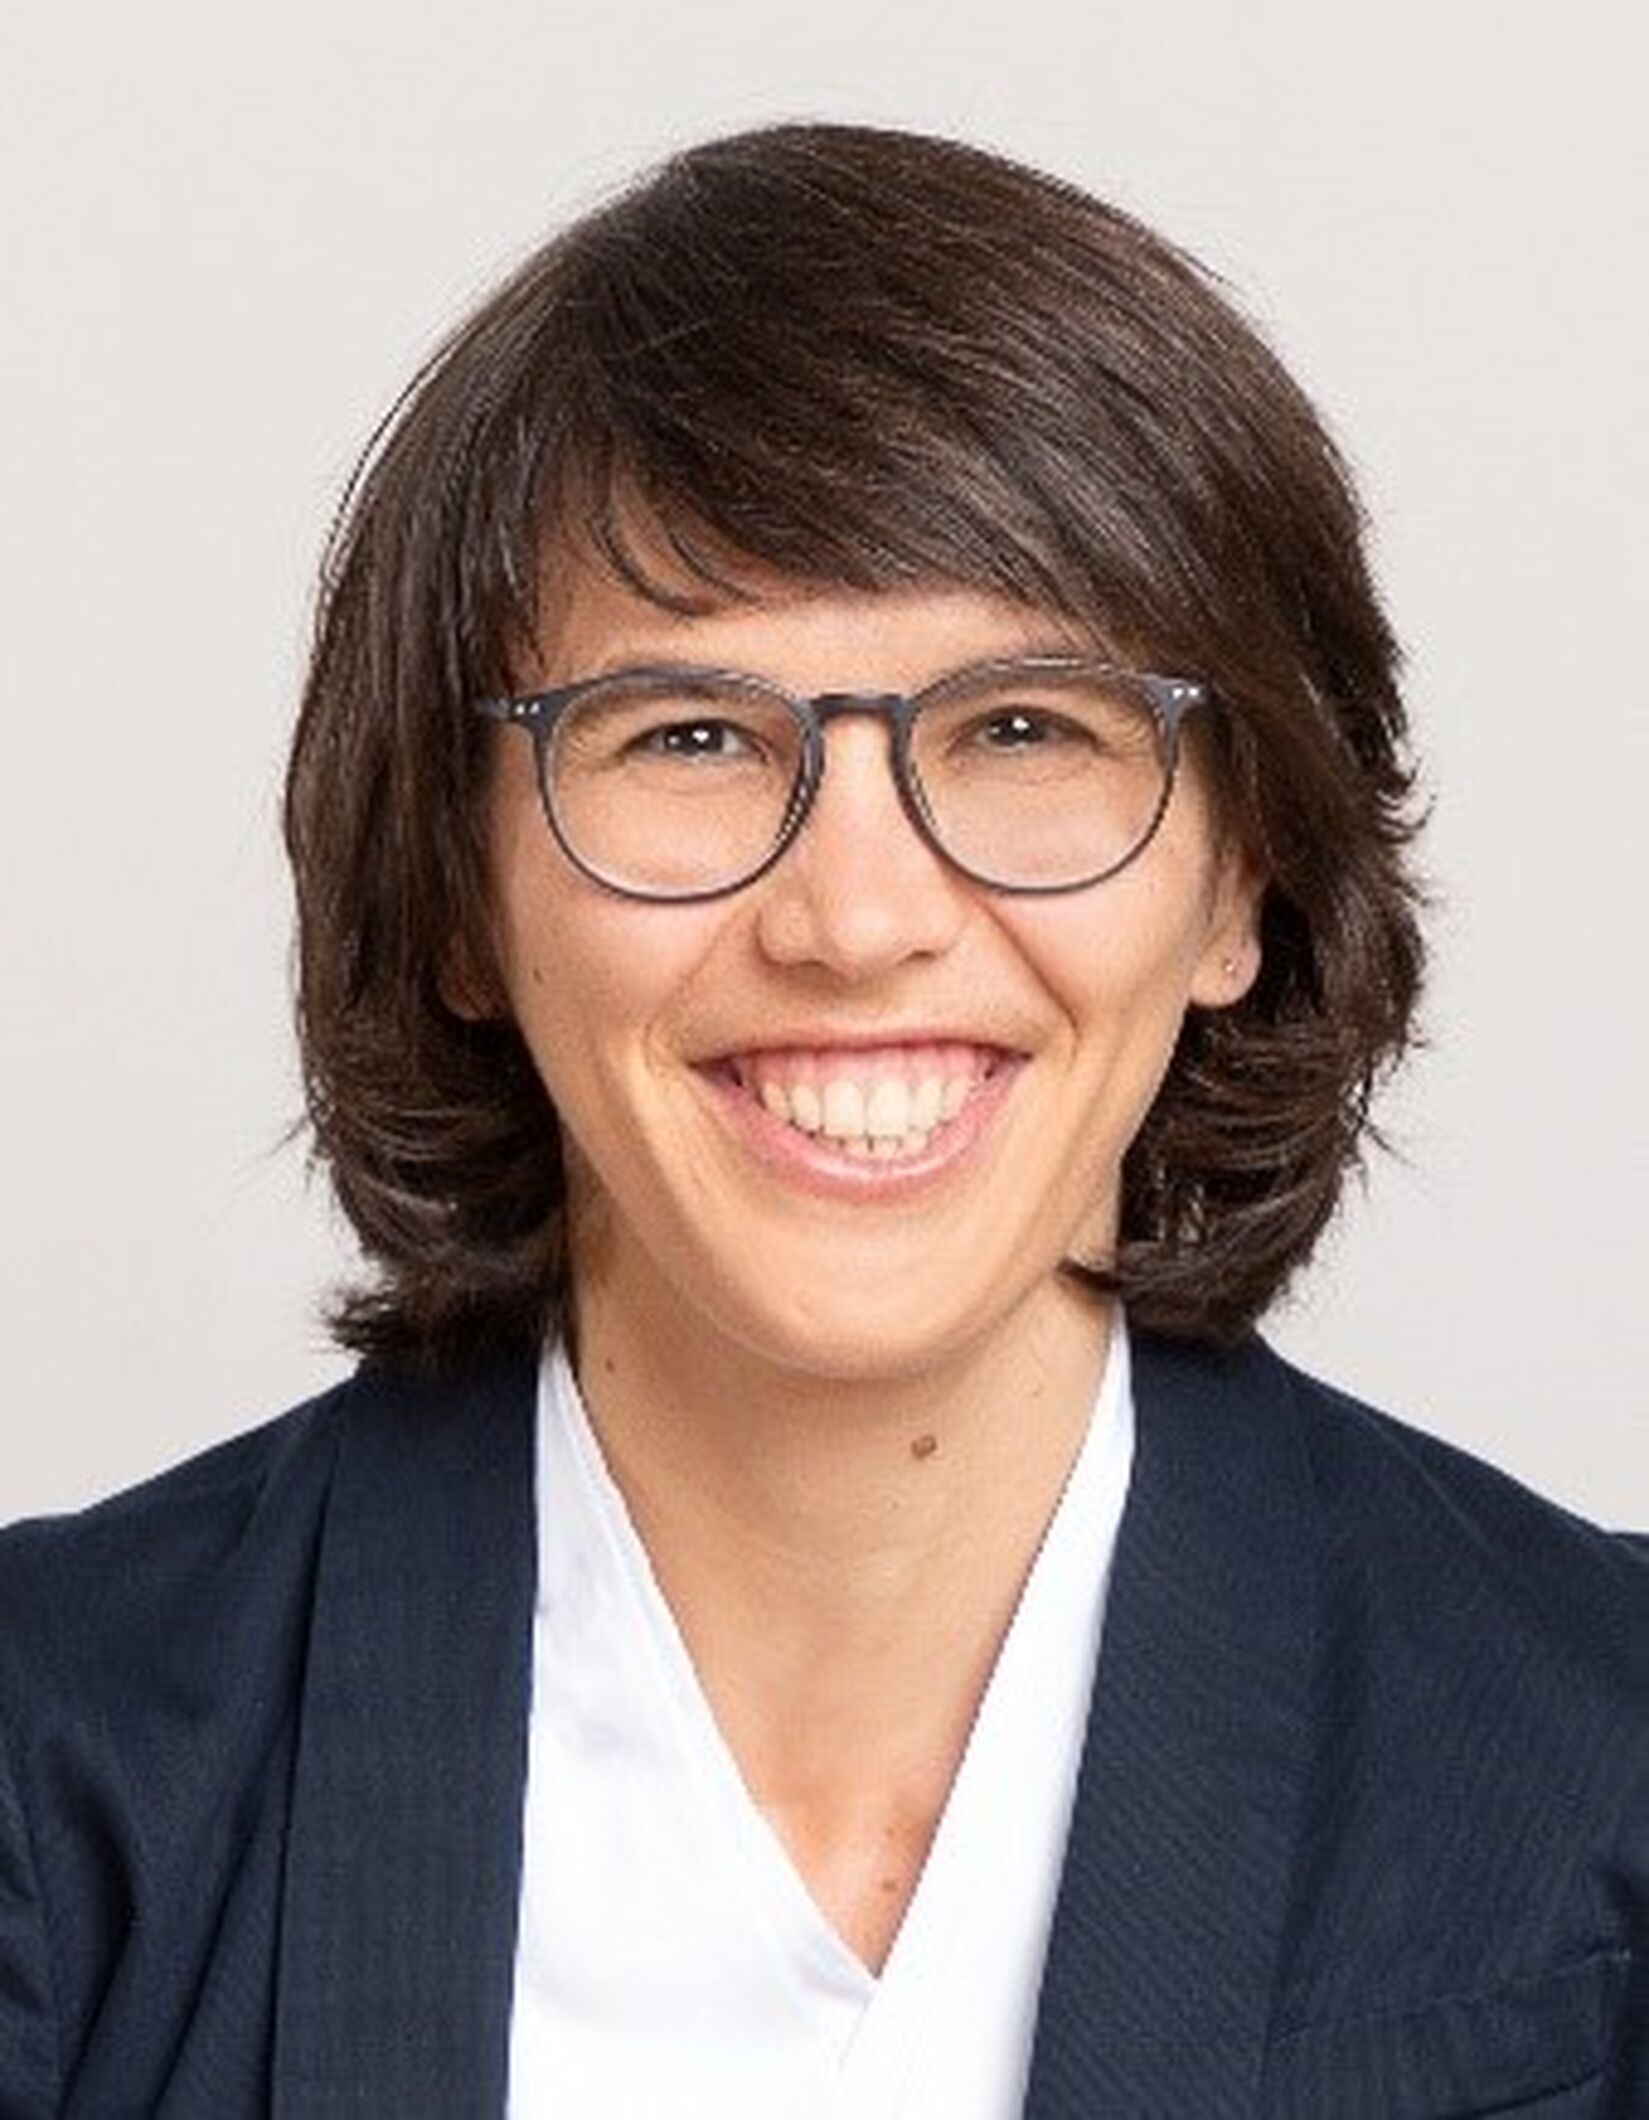 PD Dr. Nienke Lynn Hansen (38) ist Mutter von zwei Kindern, Unternehmensgründerin und arbeitet als angestellte Fachärztin in einer radiologischen Praxis in Neuss. Sie ist Gründungsmitglied und Co-Vorsitzende des Netzwerks Diversity@DRG der Deutschen Röntgengesellschaft.
